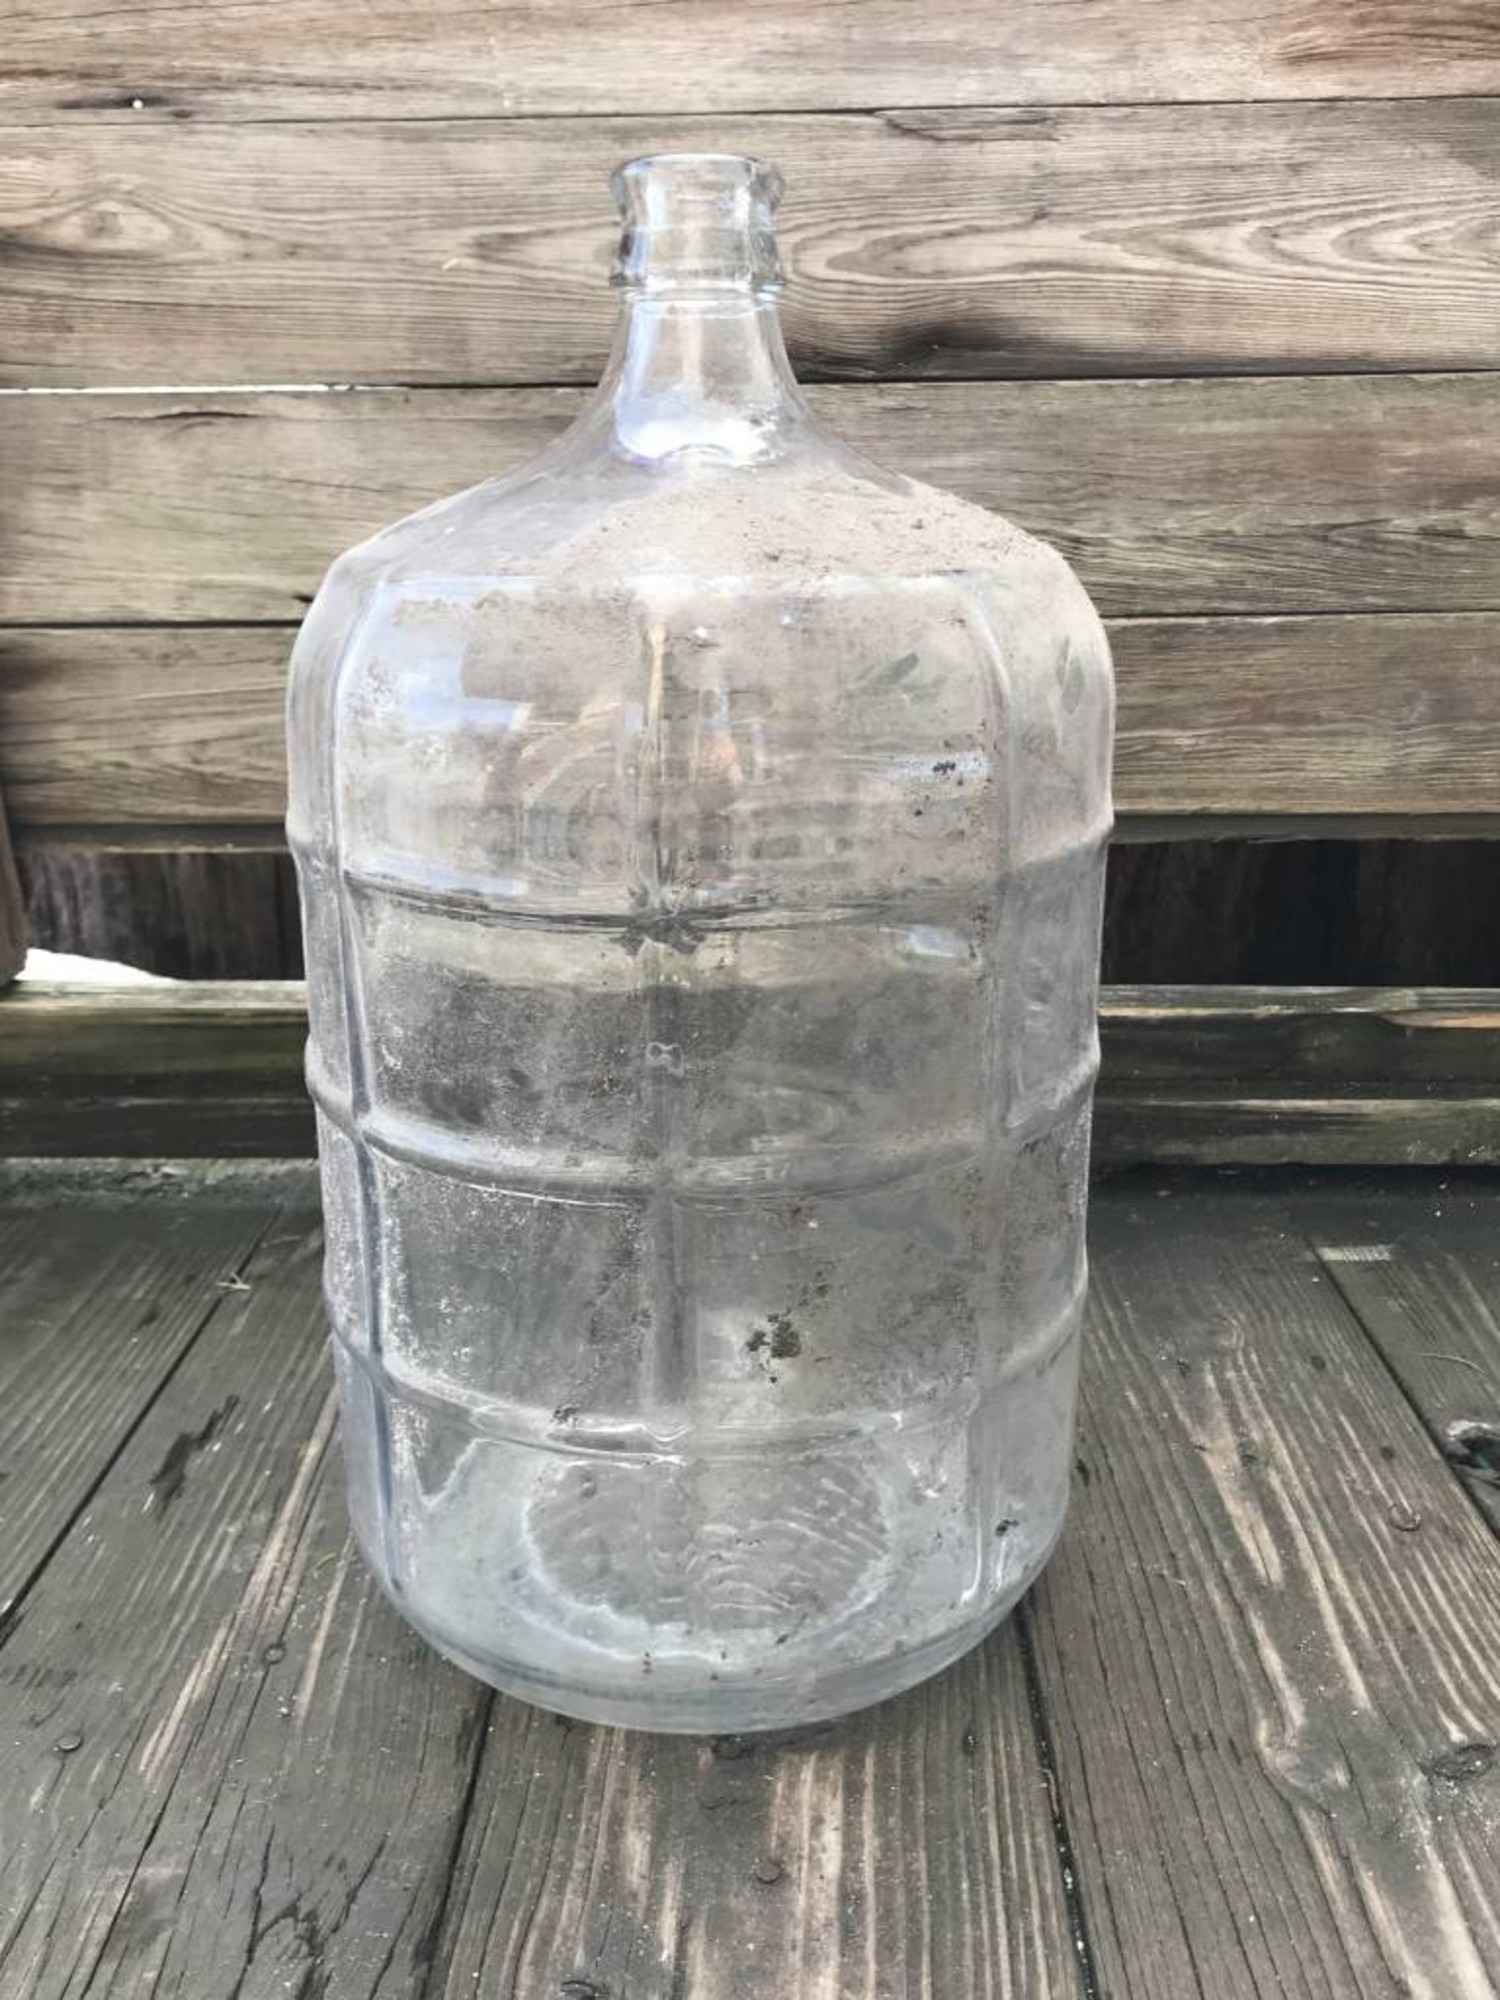 glass water jugs 1 gallon